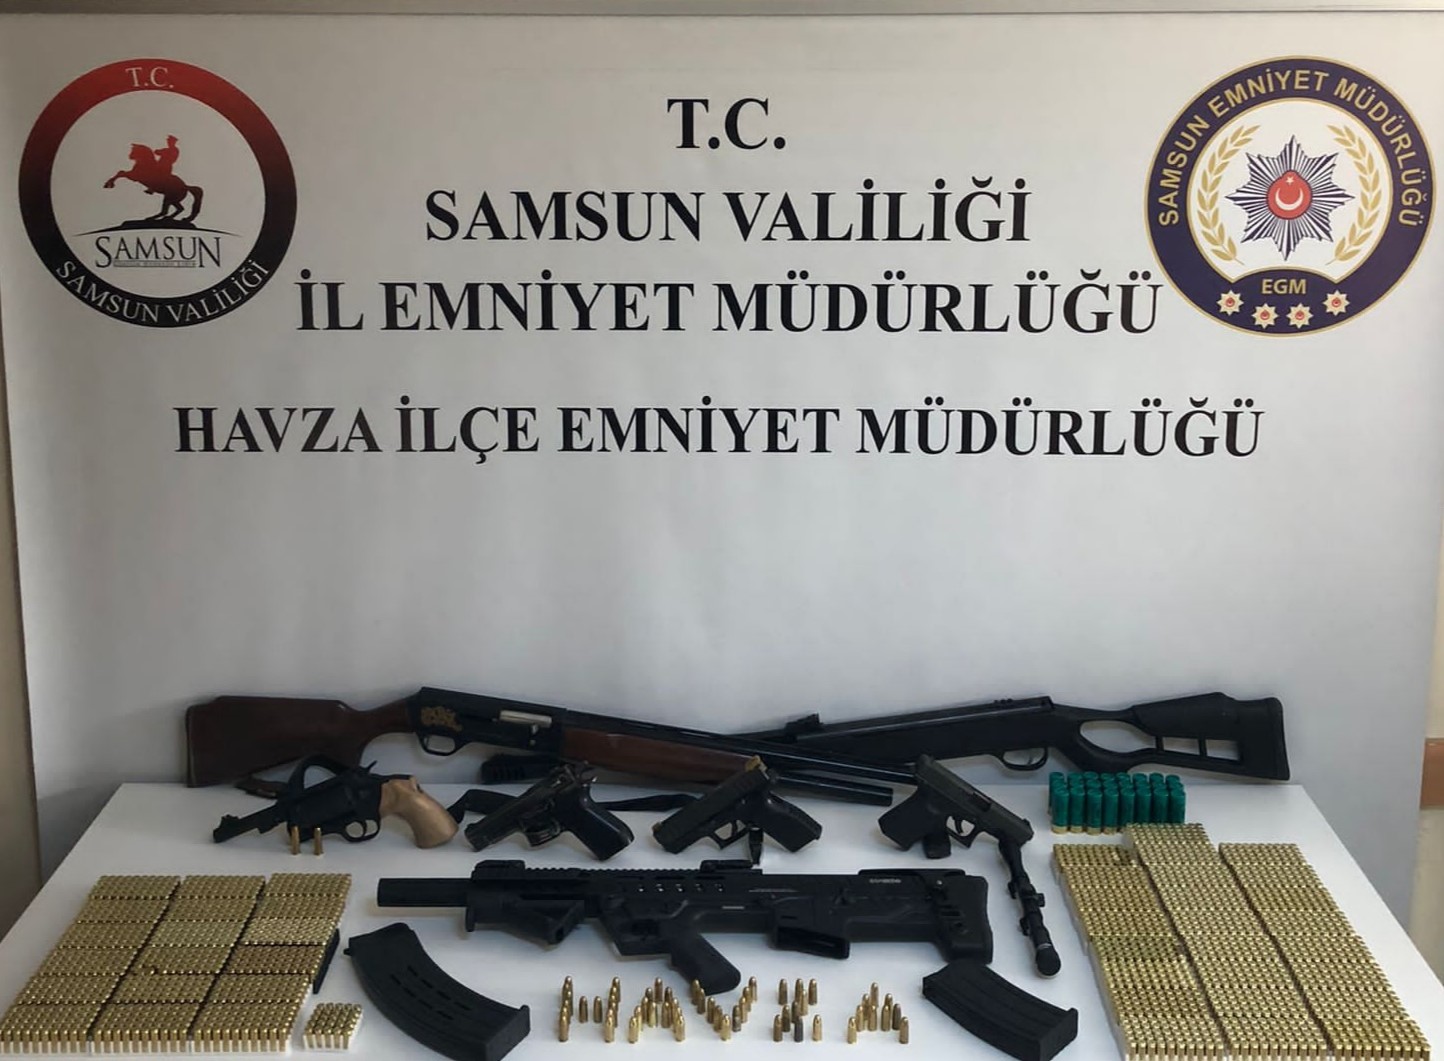 Samsun'da silah deposu oto galeriye baskın